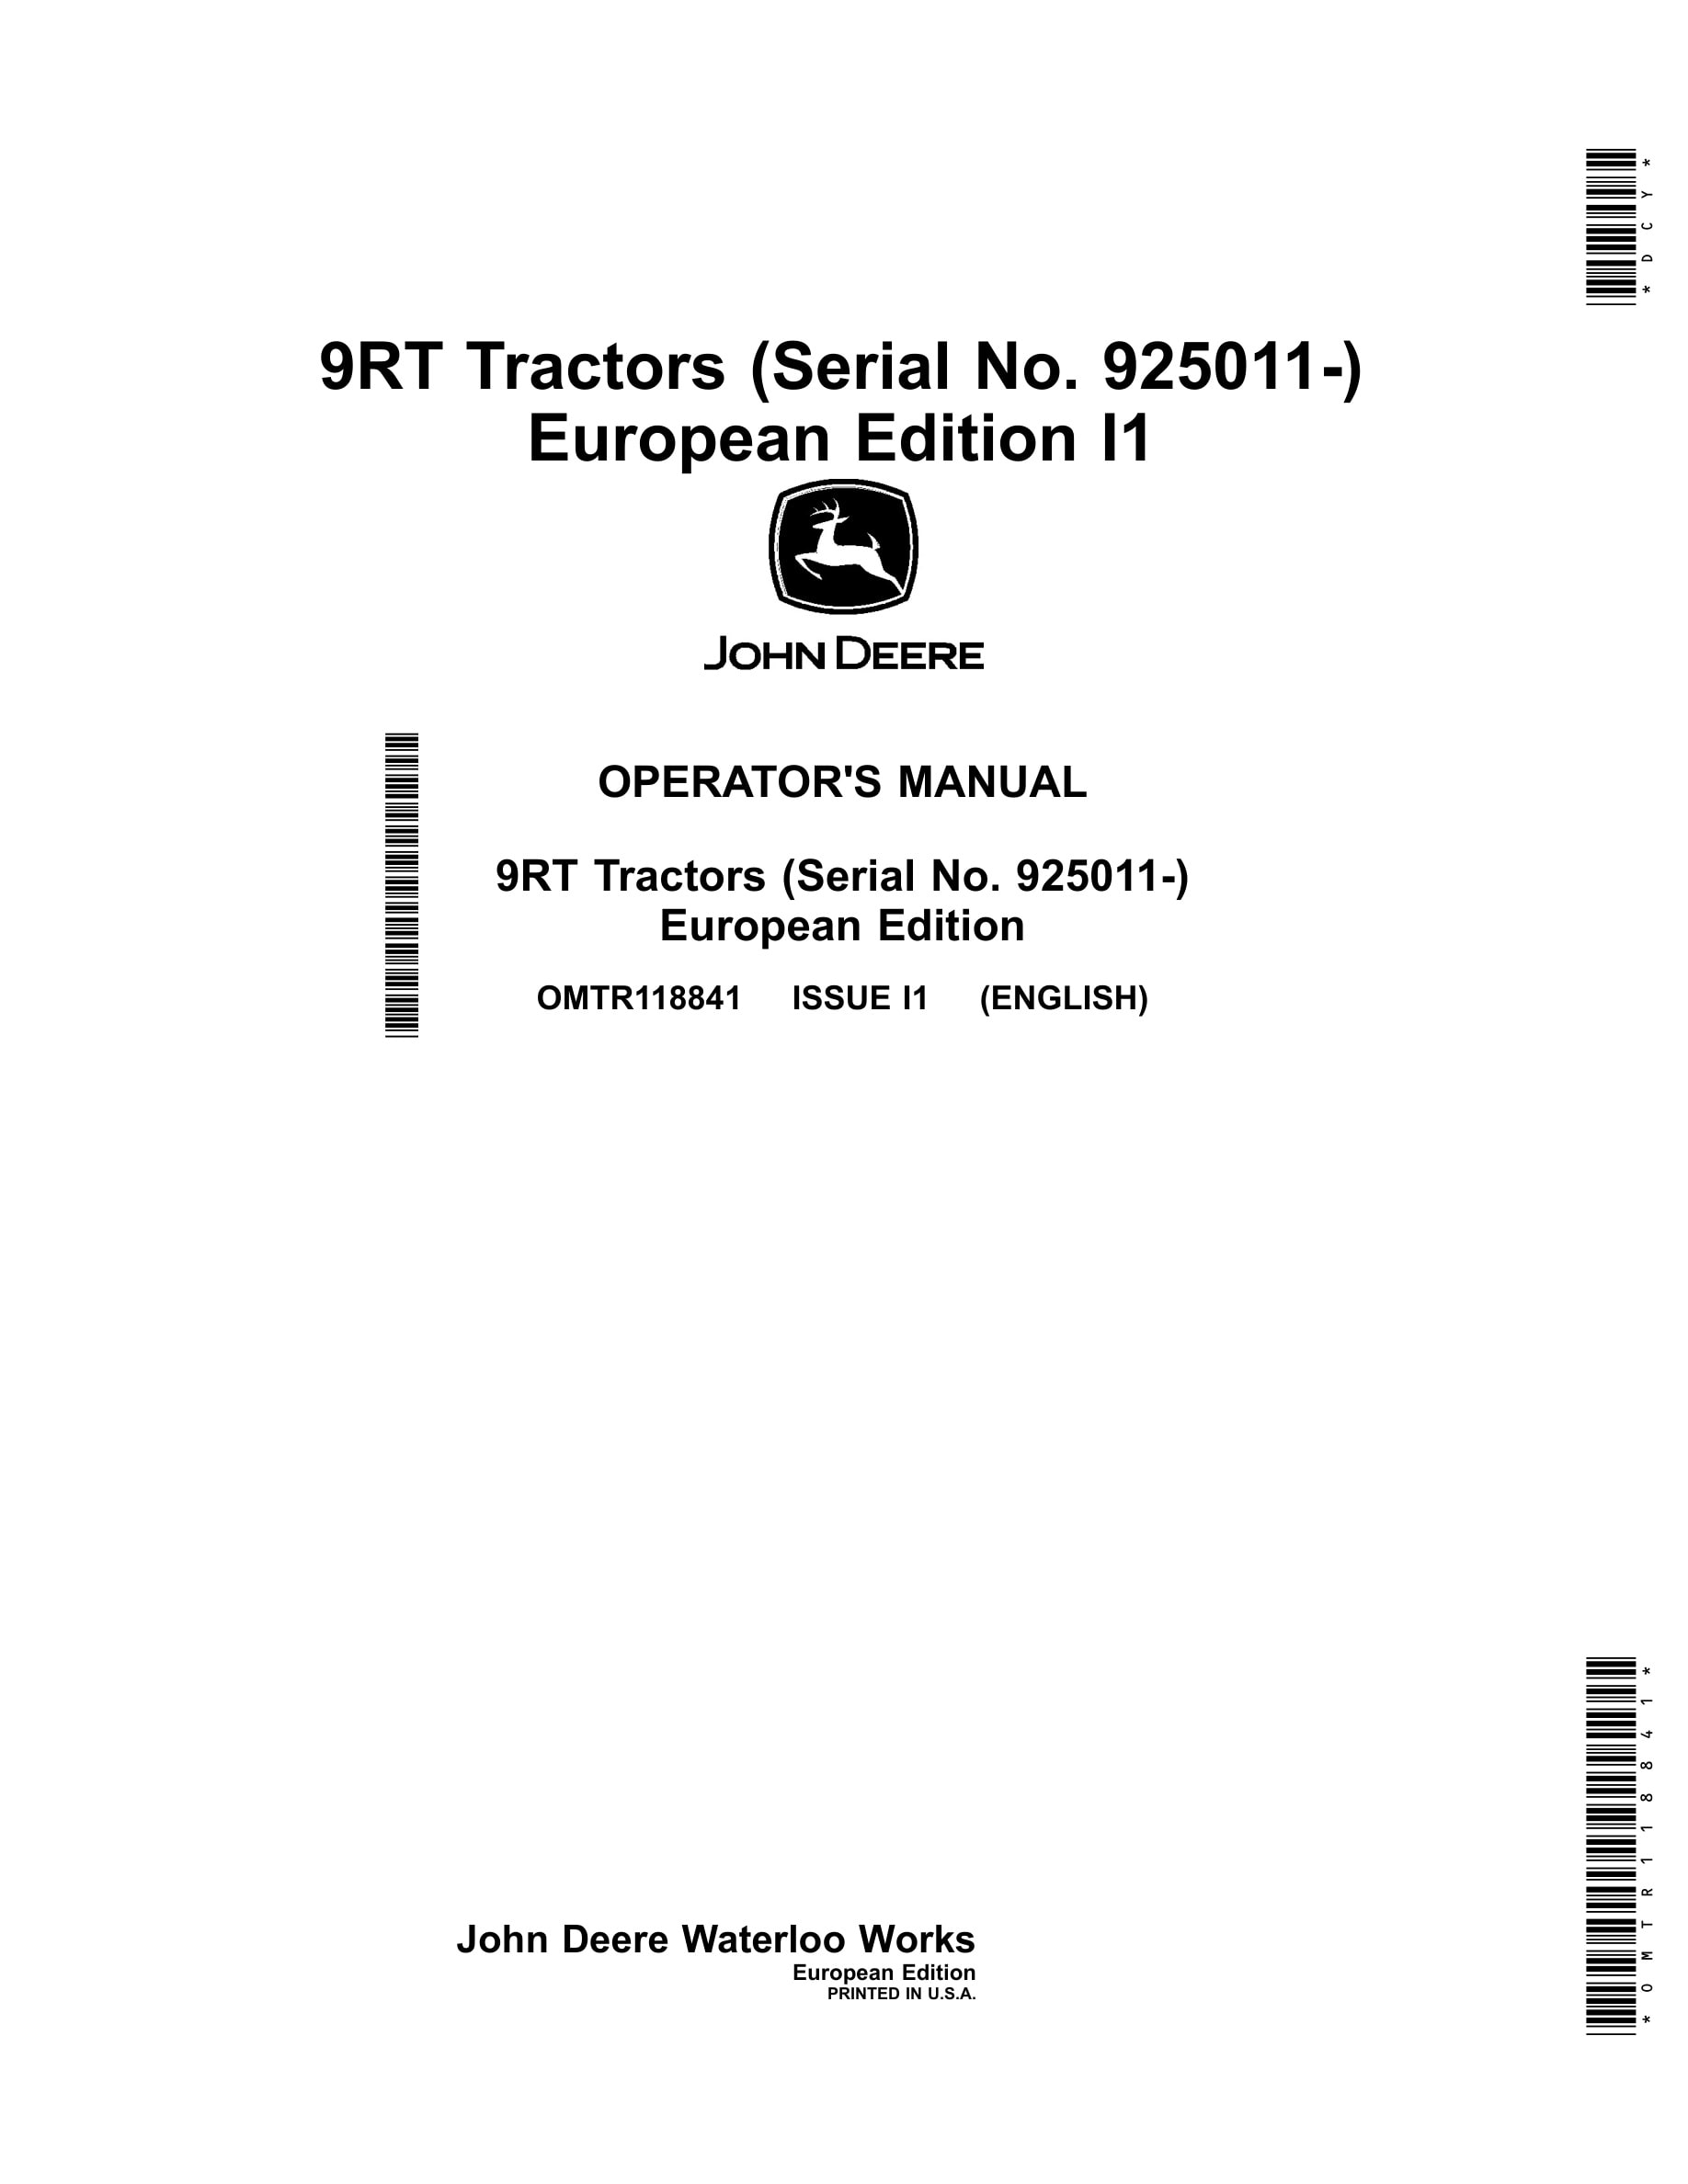 John Deere 9rt Tractors Operator Manuals OMTR118841-1